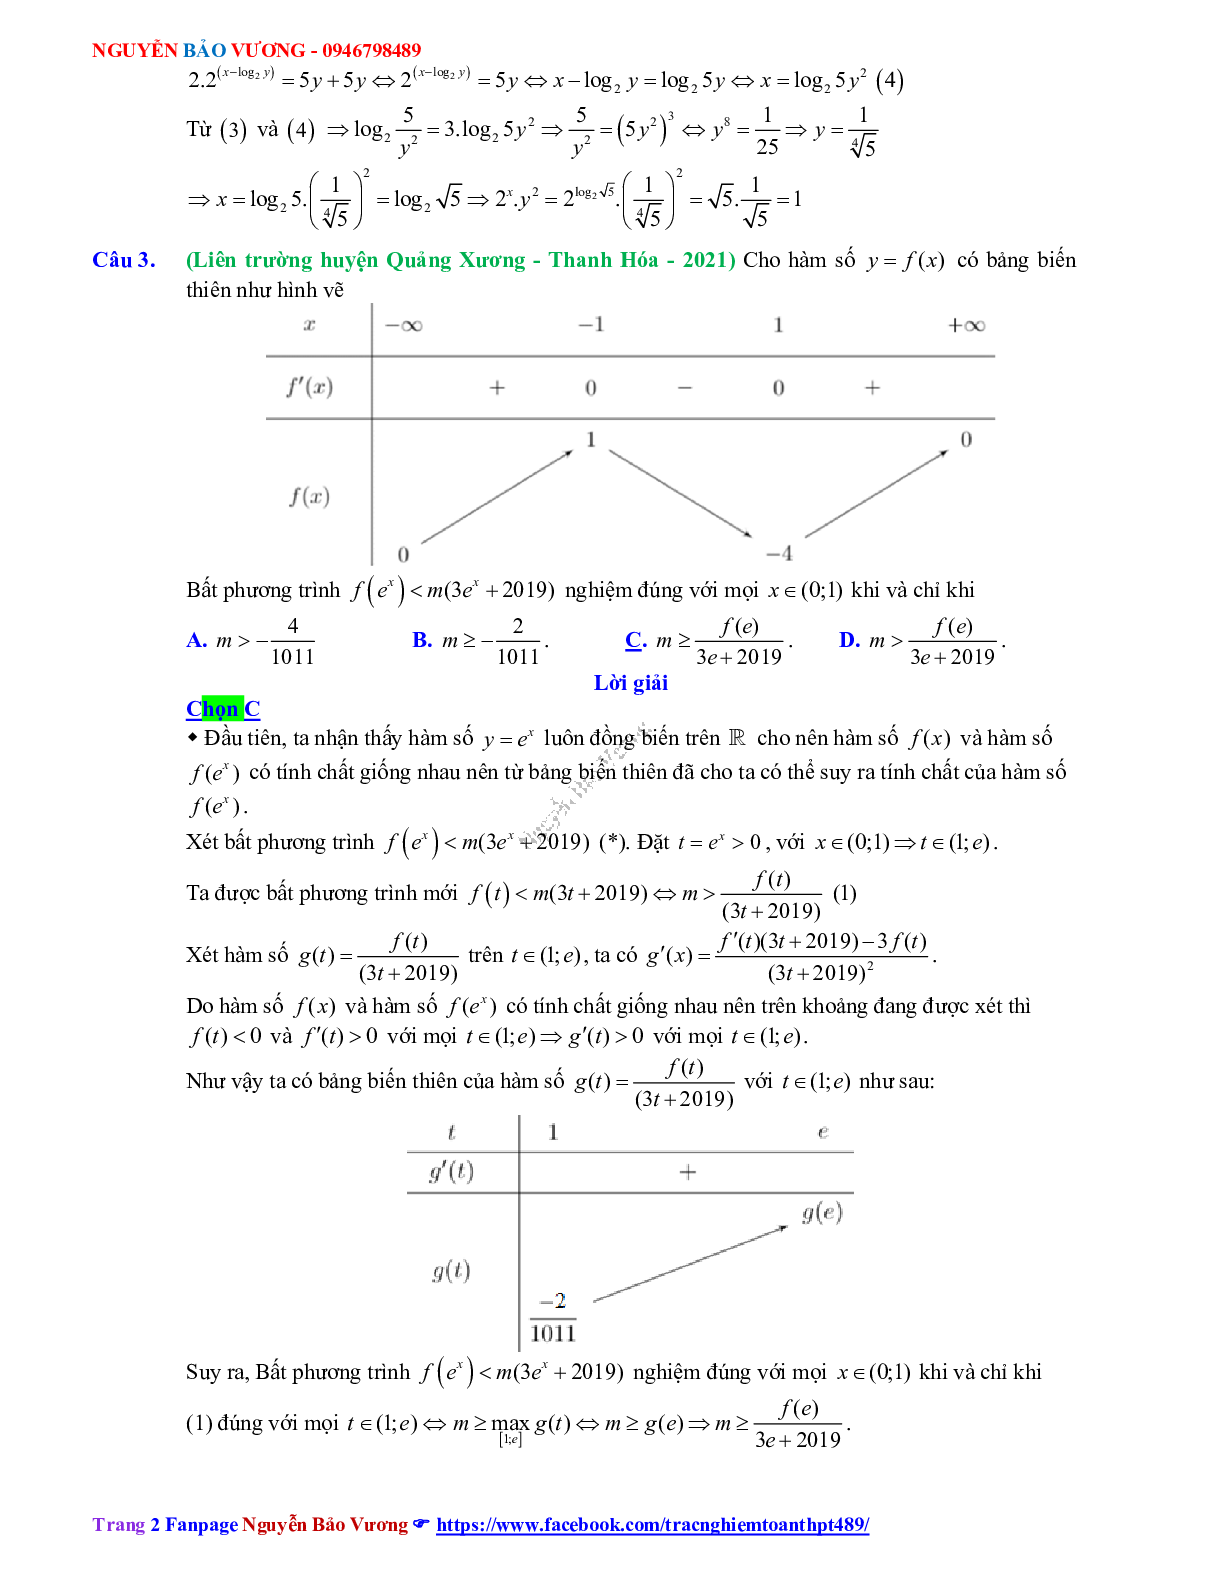 Trắc nghiệm Ôn thi THPT QG Toán 12: Đáp án mũ - lũy thừa - logarit mức độ vận dụng cao (trang 2)